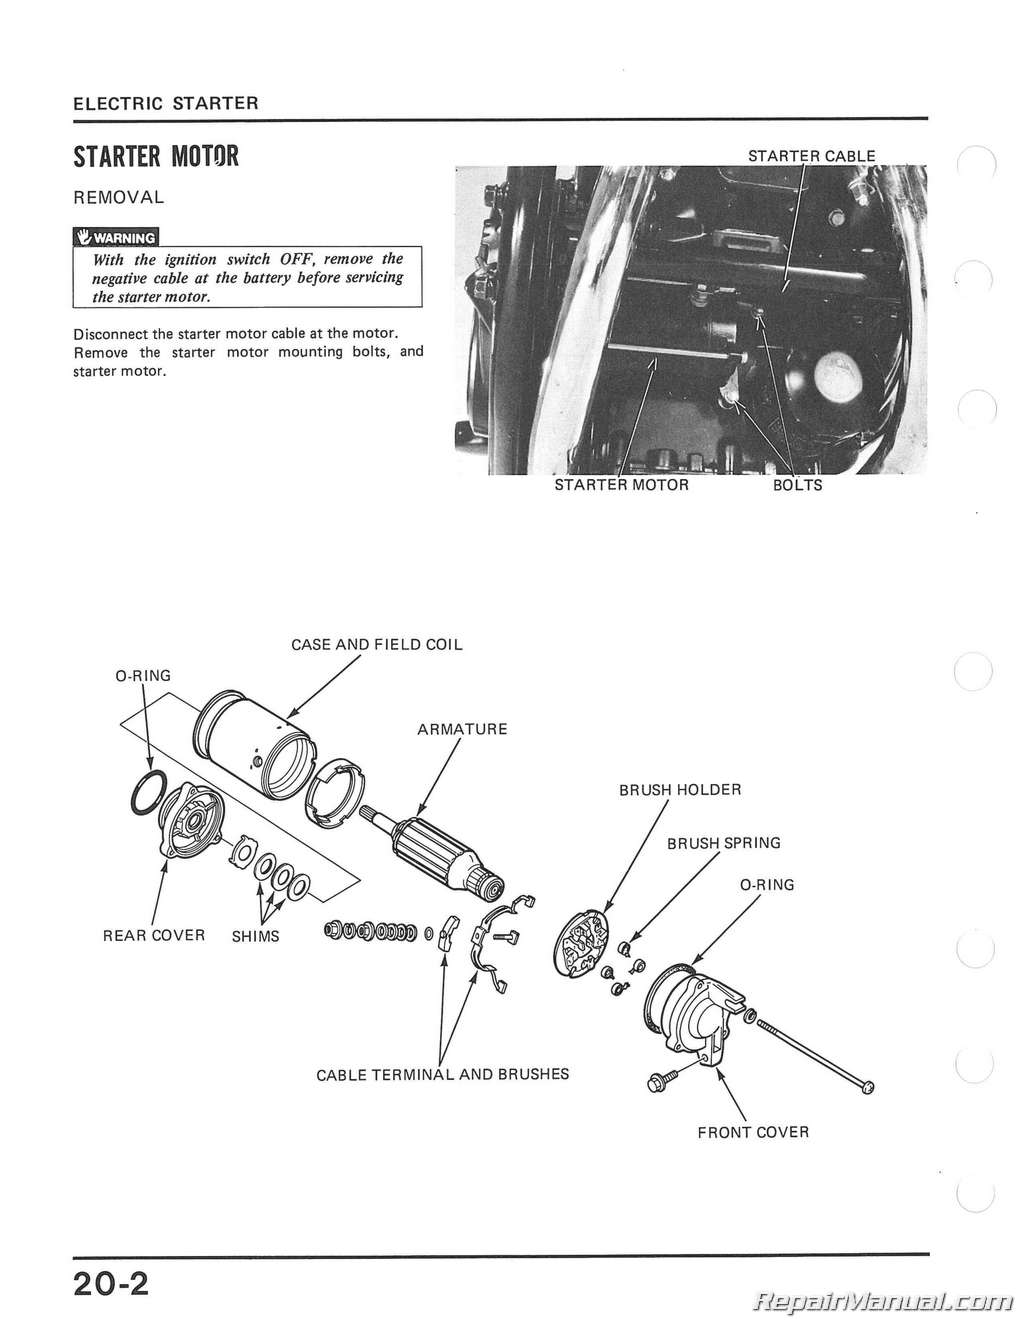 1982 Honda magna repair manual #3